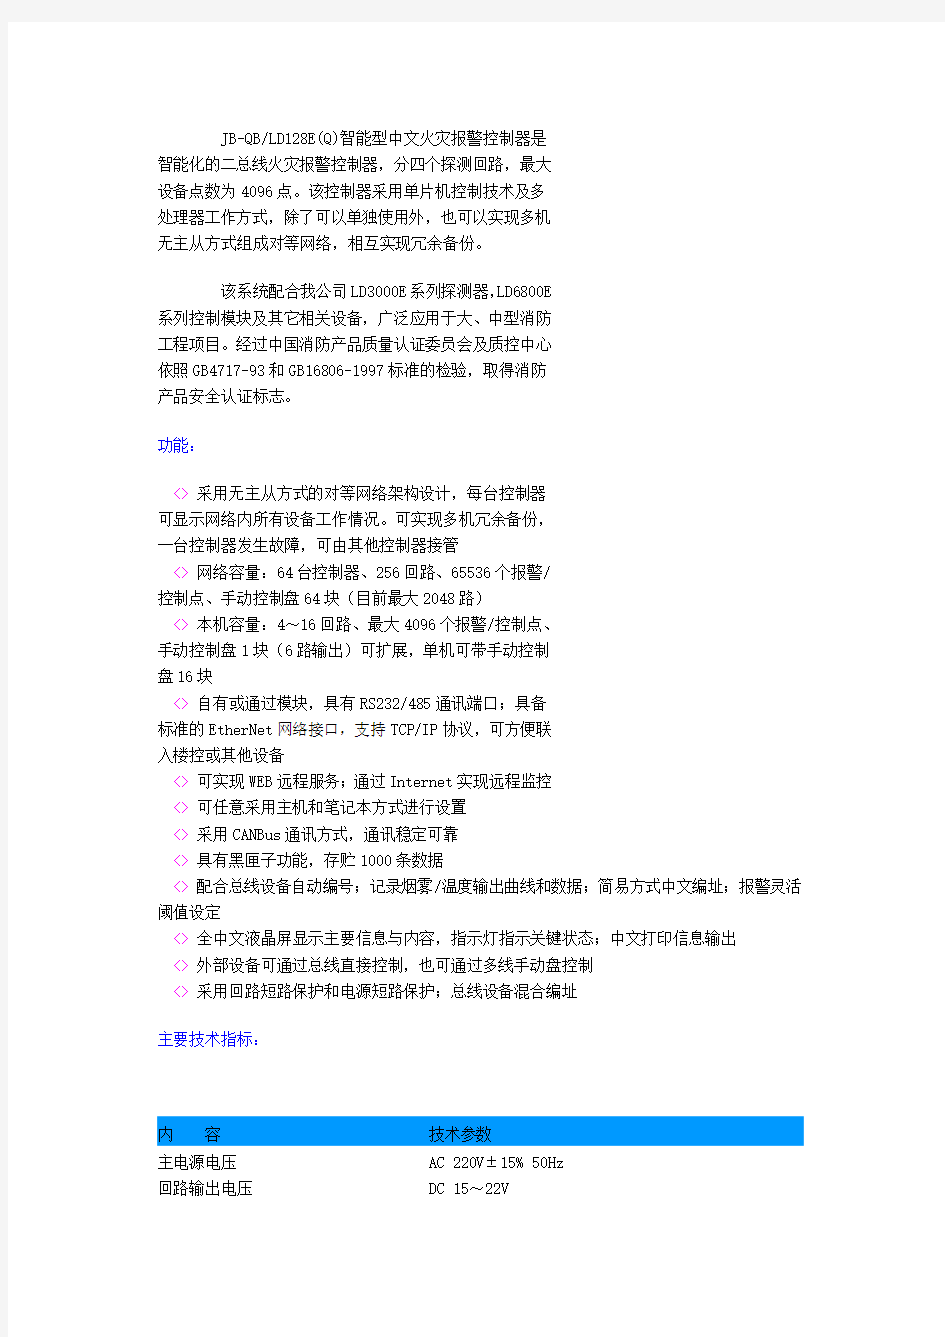 北京利达LD128(E)联动编程手册